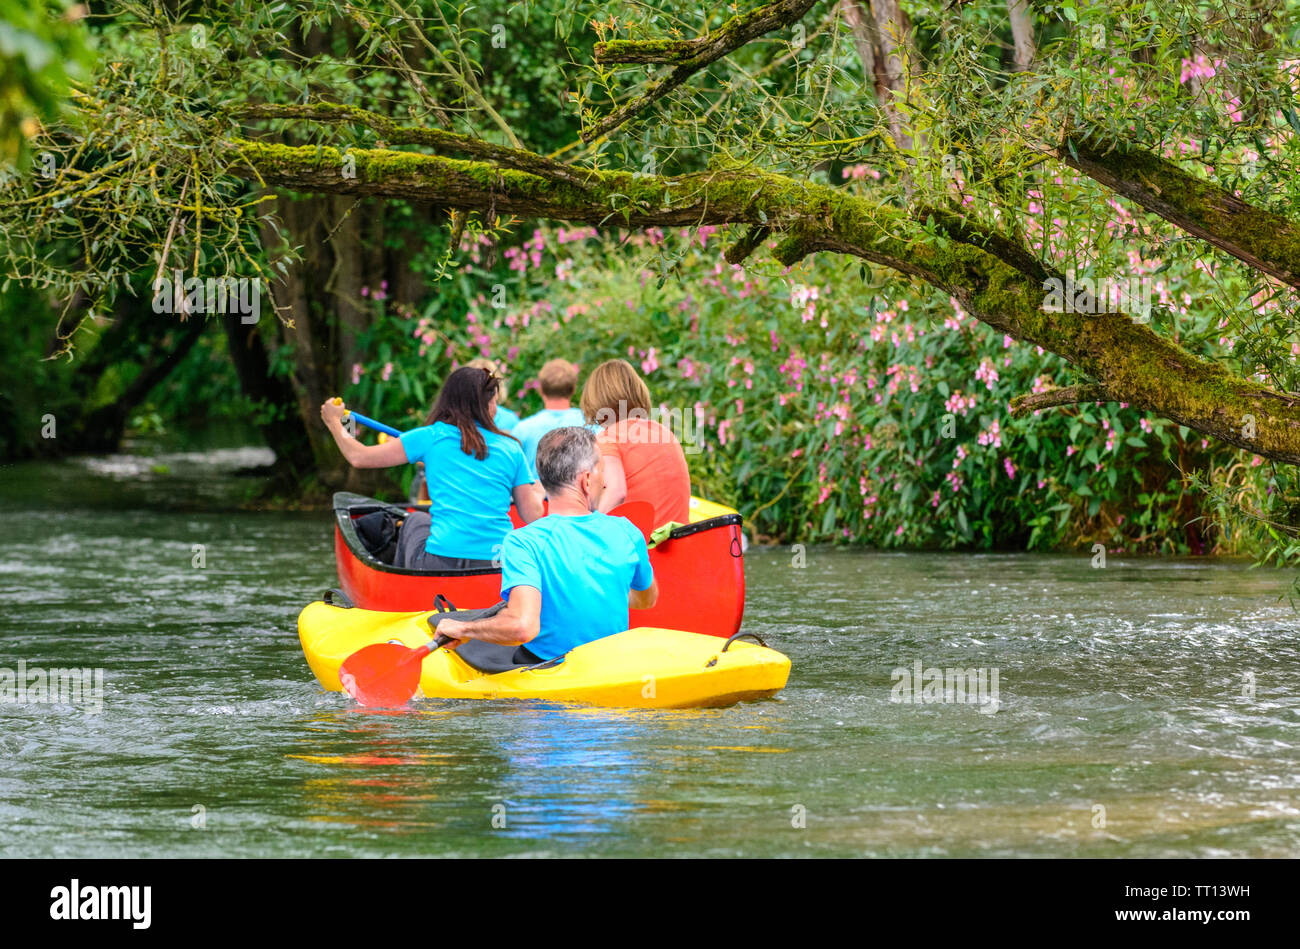 Mehrere Leute machen eine Kanutour auf dem idyllischen Fluss Pegnitz in  franken Stockfotografie - Alamy